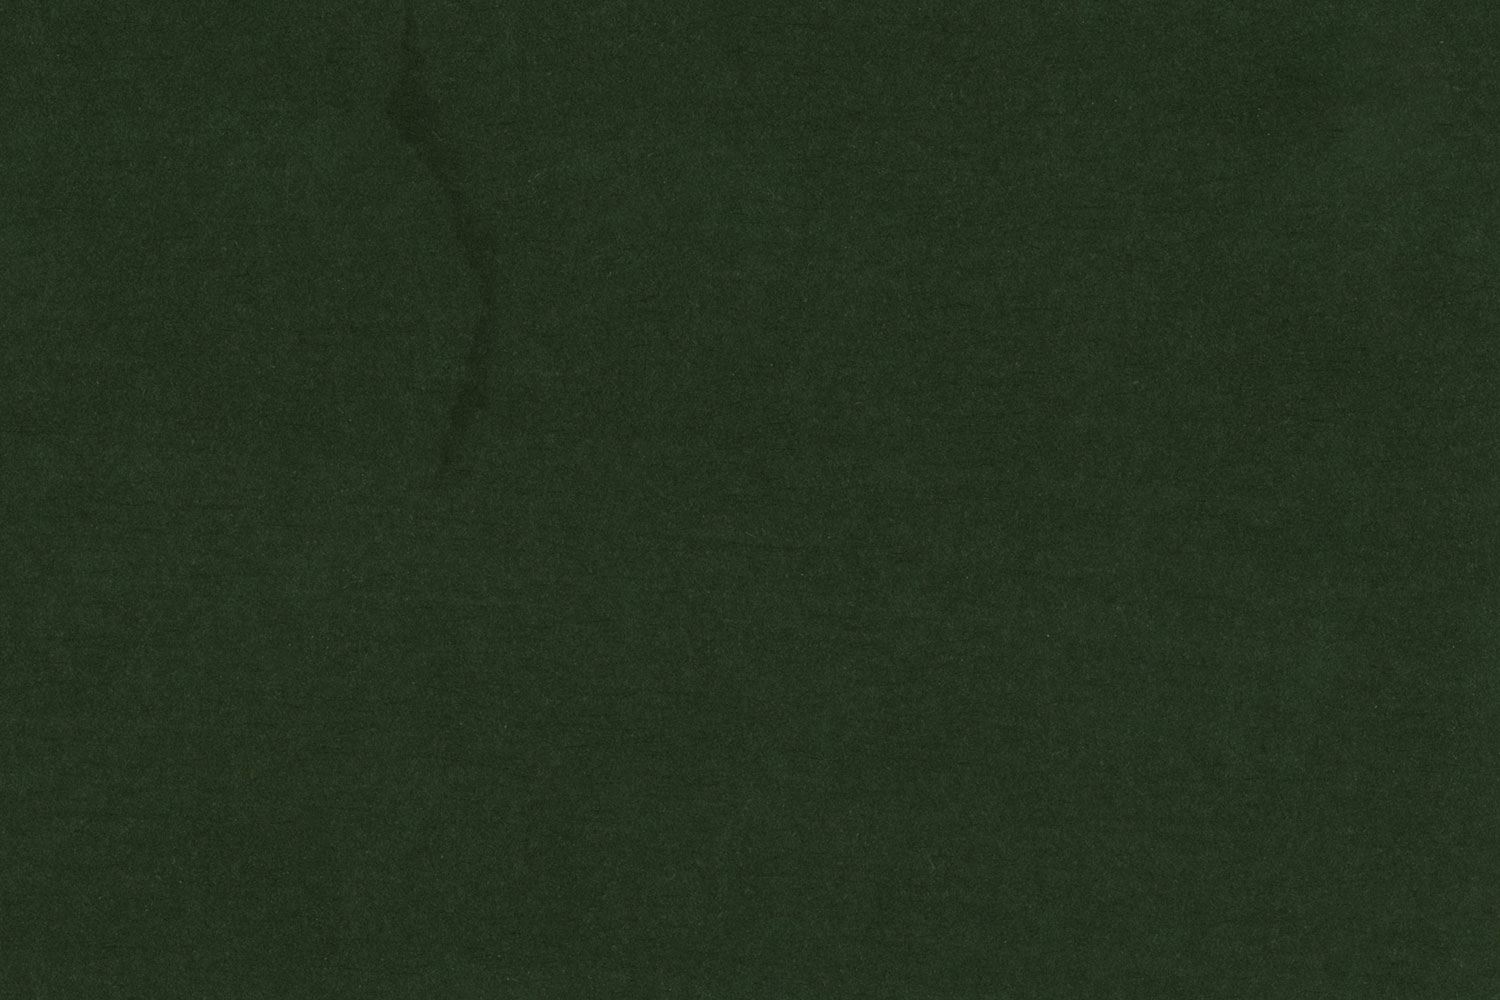 Fil Kağıdı - Black (5'li paket, 110 gsm, 70x100 cm)